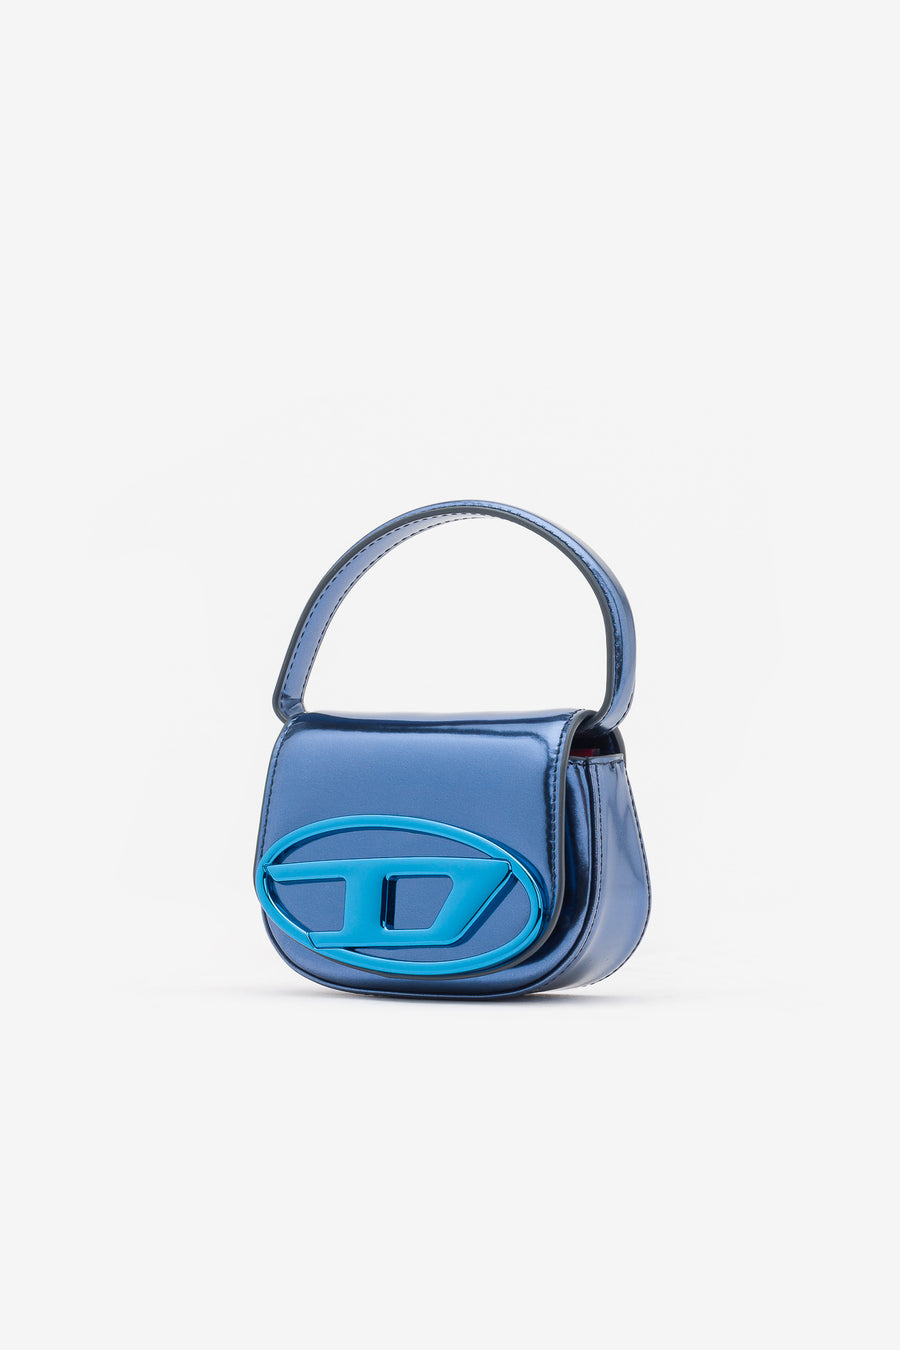 Diesel Women's 1DR Leather Shoulder Bag